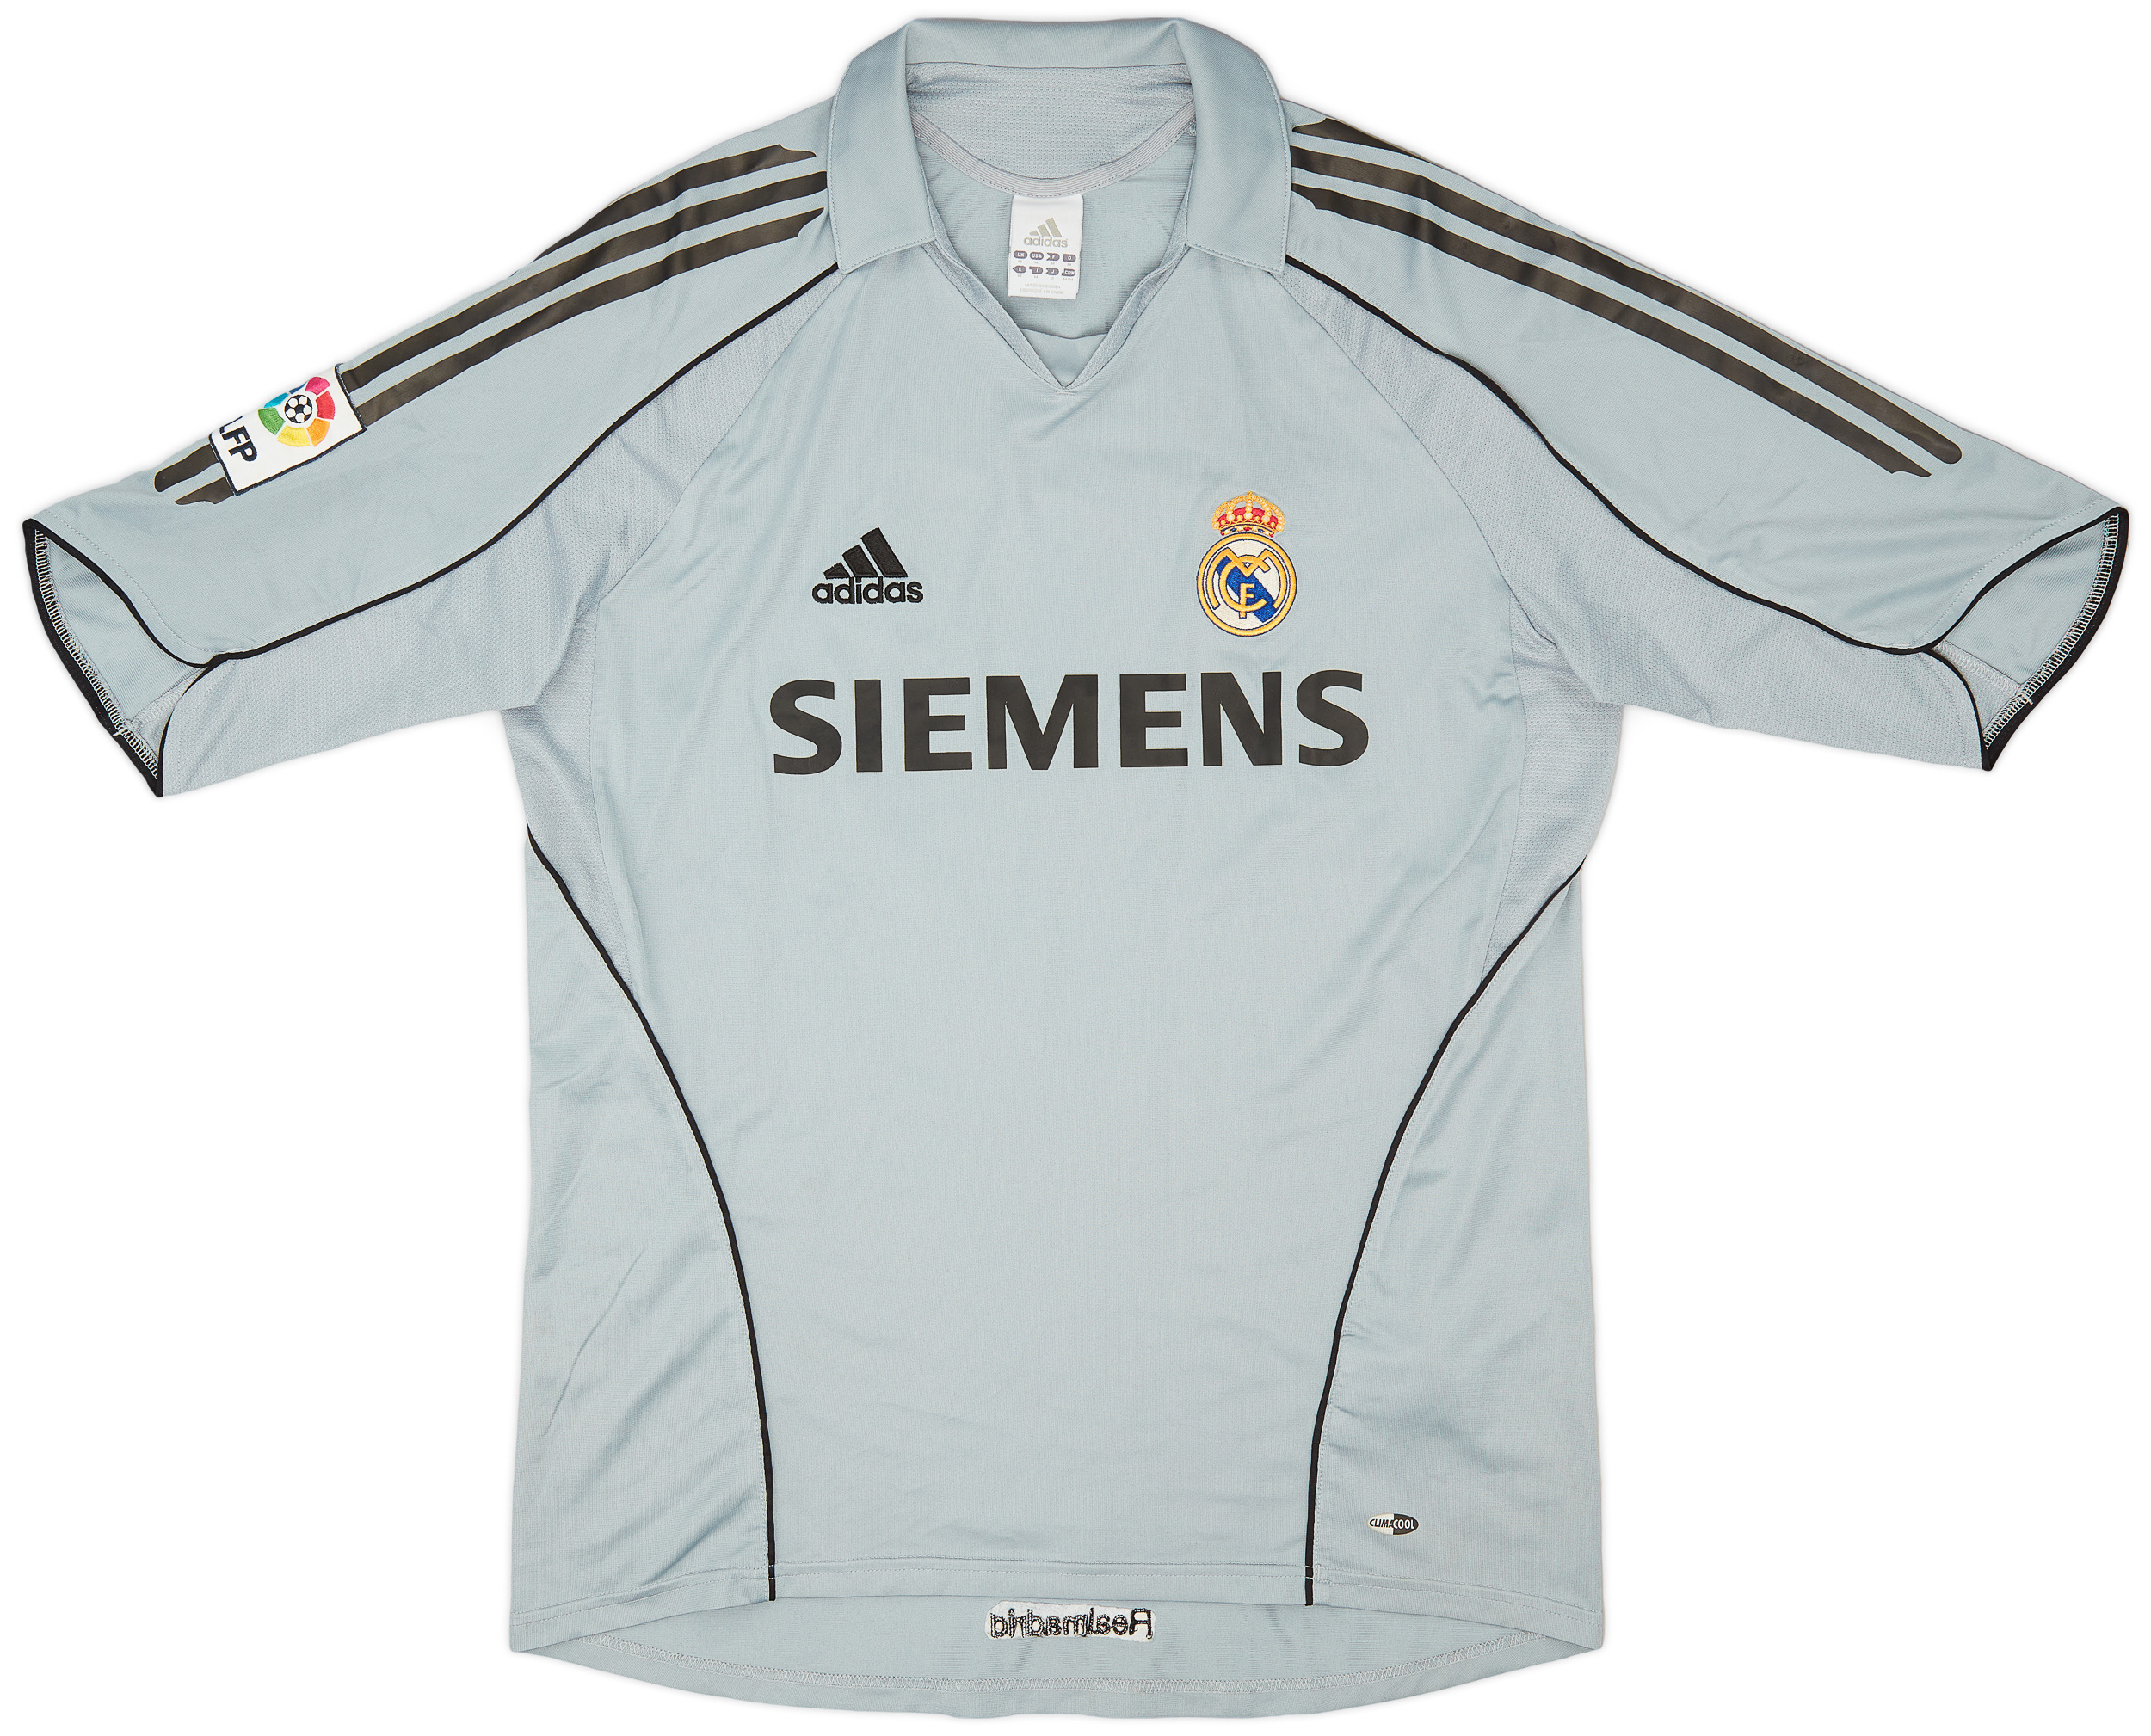 2005-06 Real Madrid Third Shirt - 6/10 - ()